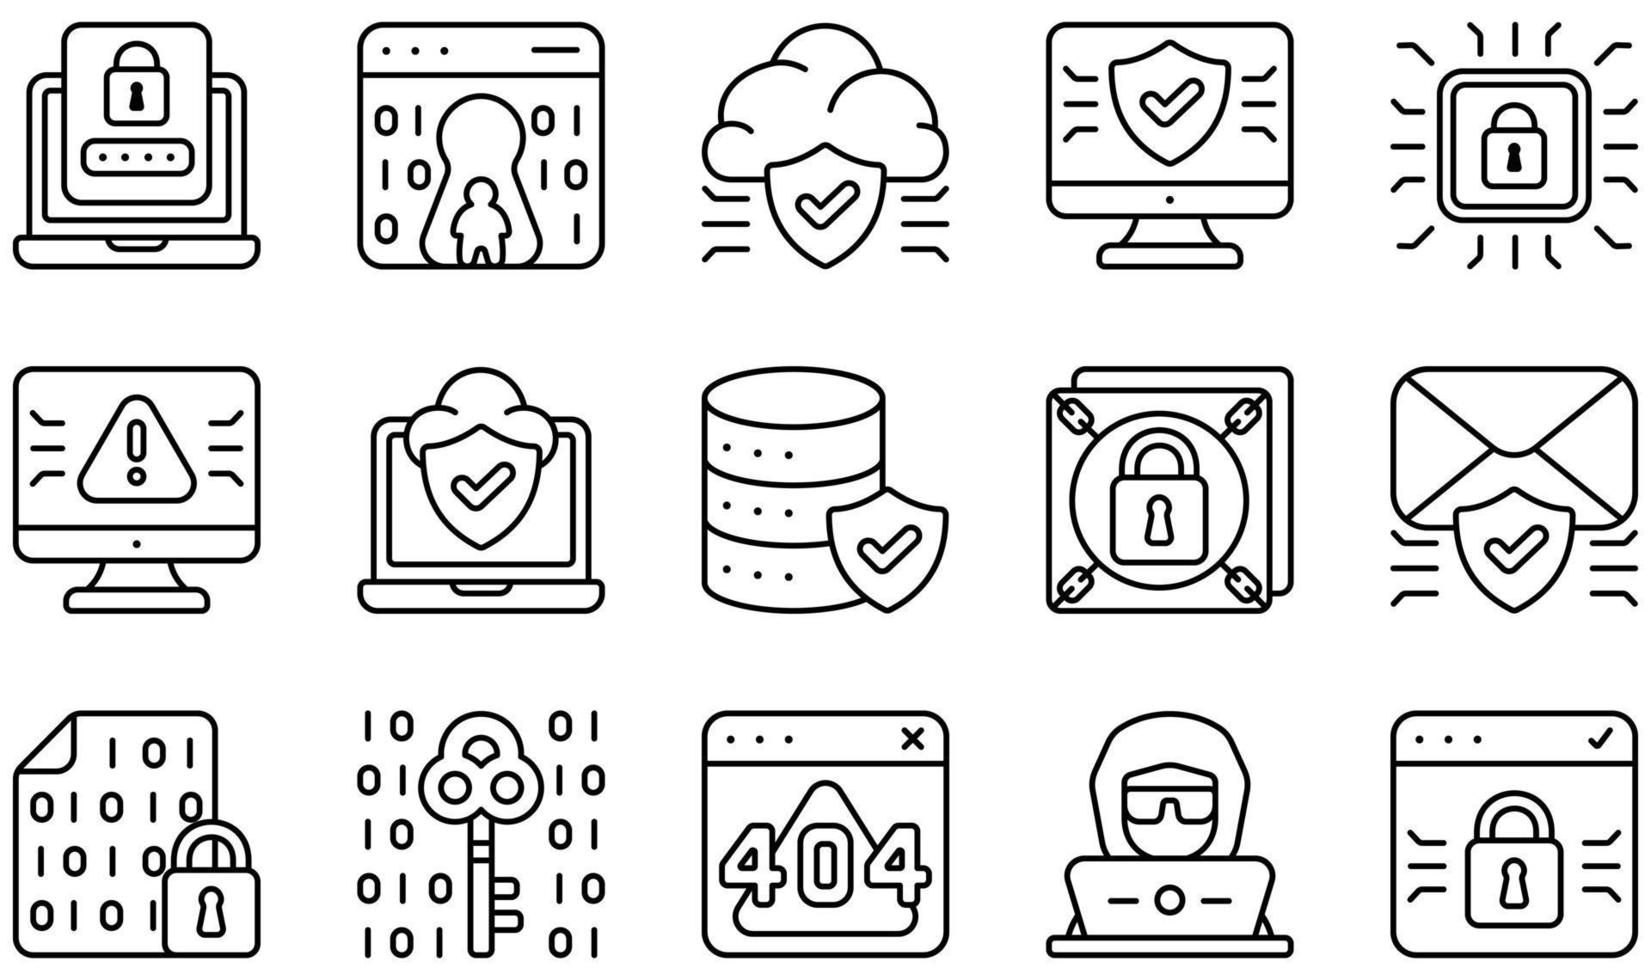 set di icone vettoriali relative alla sicurezza informatica. contiene icone come autenticazione, backdoor, cloud, computer, sicurezza informatica, criminalità informatica e altro ancora.